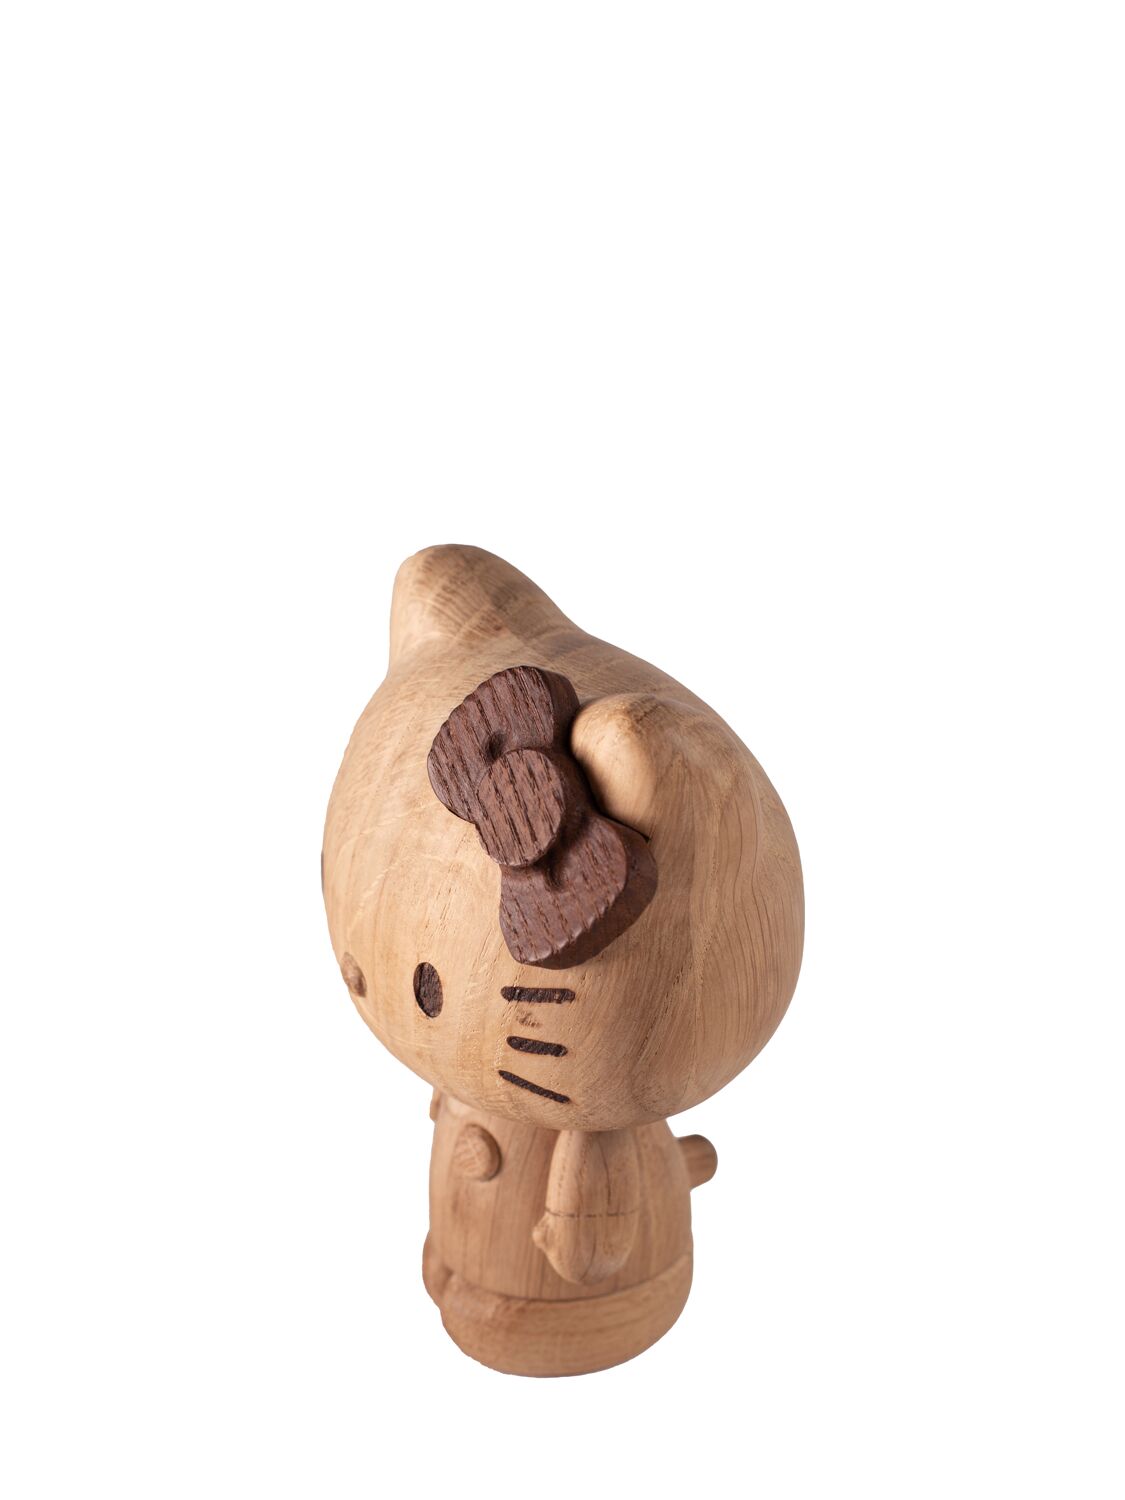 HELLO KITTY小号橡木雕塑